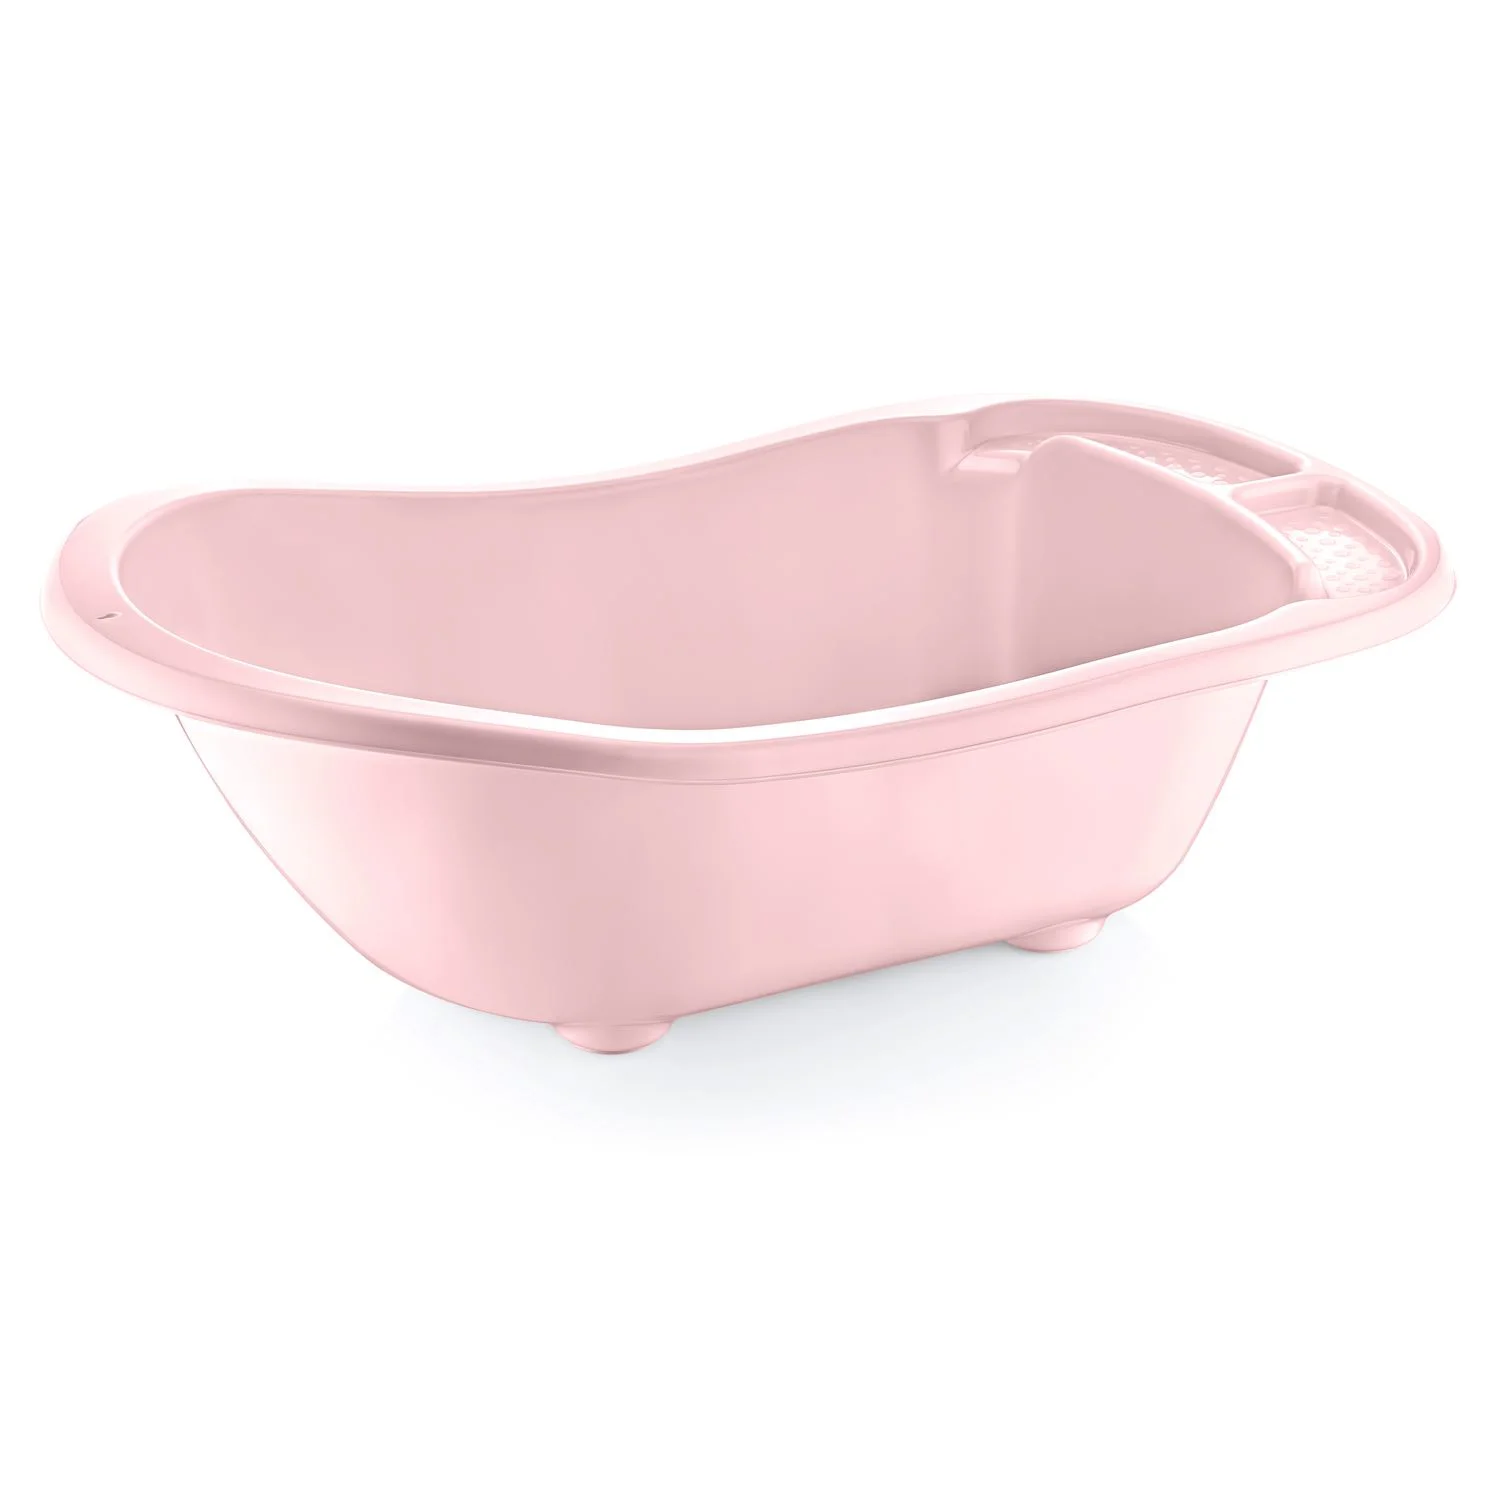 Набор для ванной BabyJem Pink, 5 предметов